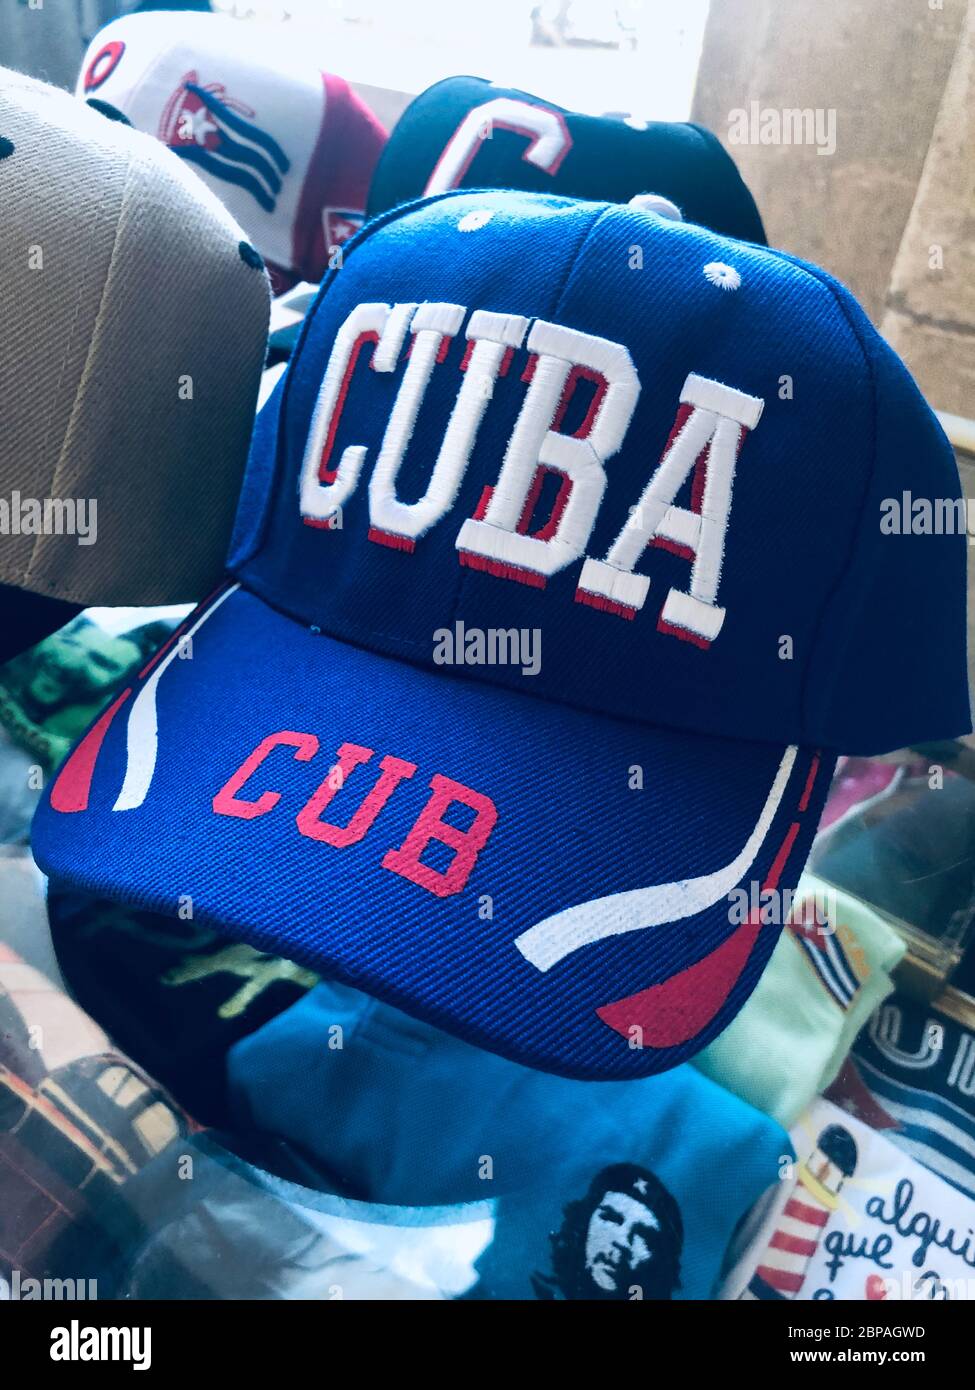 Photo d'une casquette de baseball bleue rouge et blanche avec Cuba  orthographié en grandes lettres. Assis sur un présentoir avec d'autres  casquettes, et des T-shirts avec le visage de Che Guevara Photo